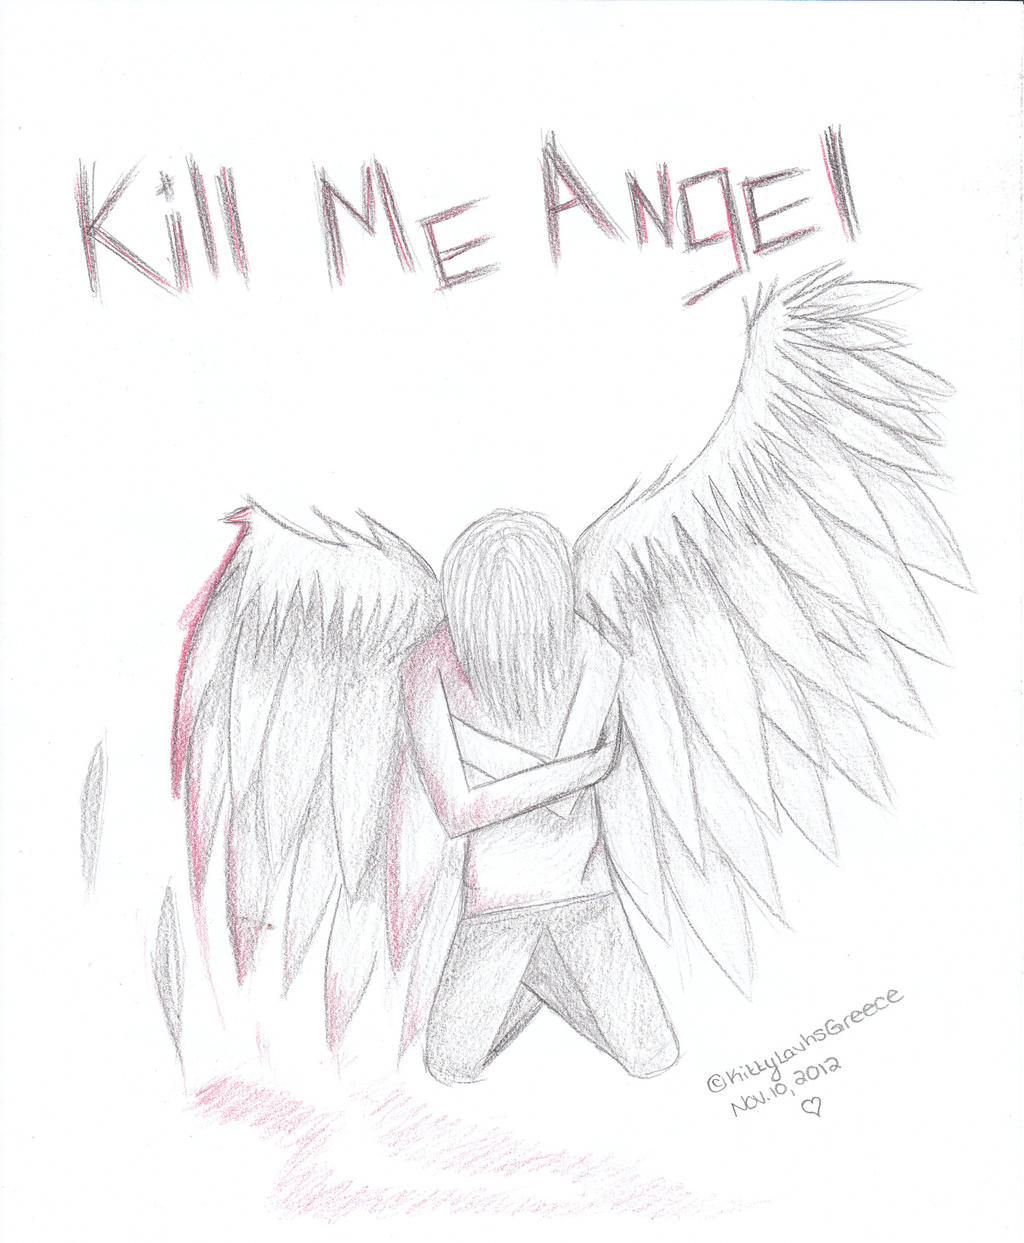 Kill the angel